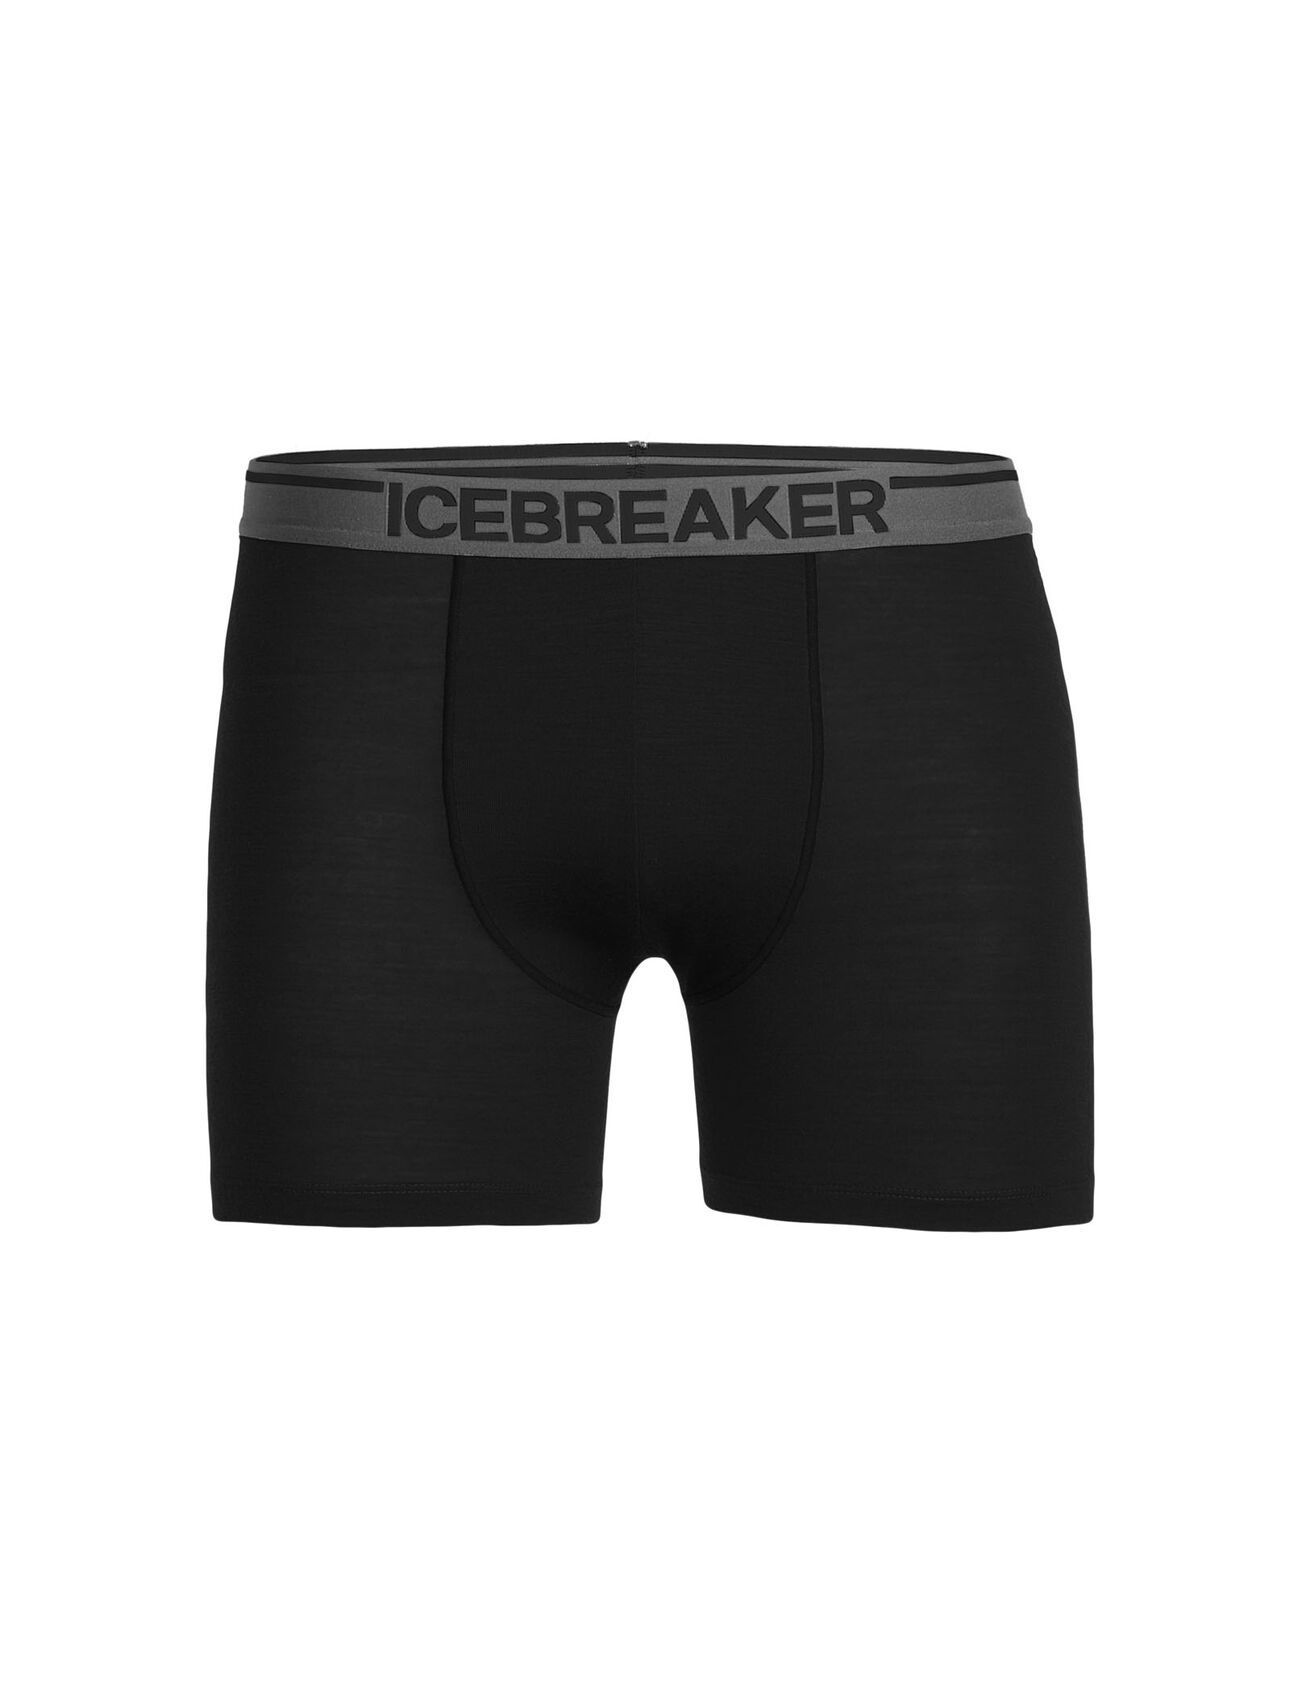 Icebreaker Men's Merino Anatomica Boxers in Black